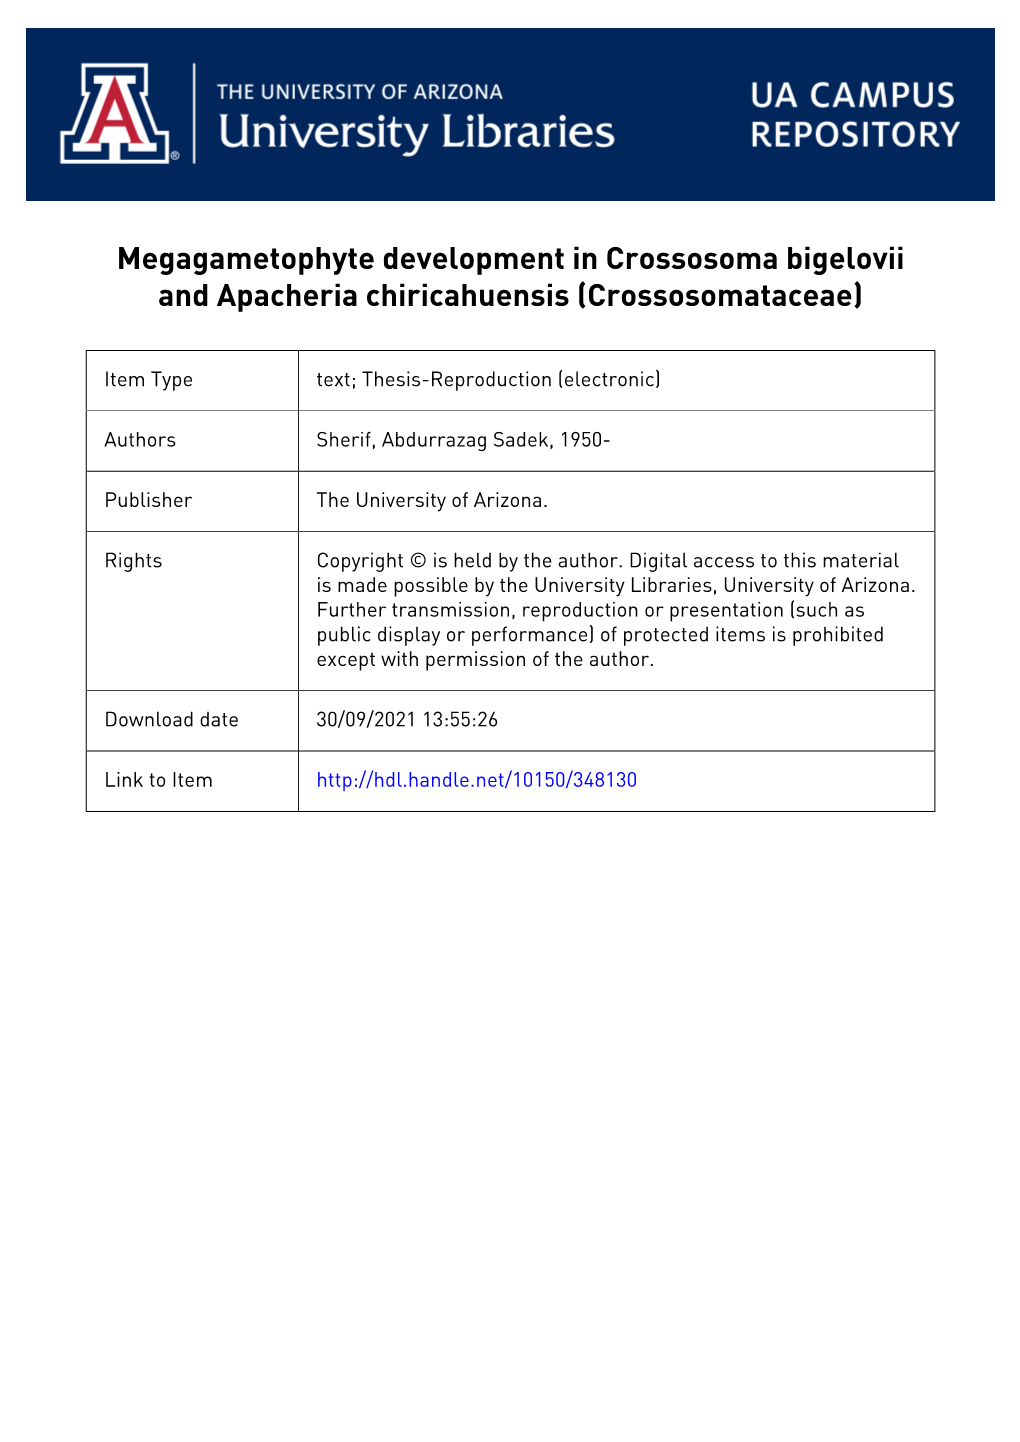 Megagametophyte Development in Crossqsqma Bigelovii